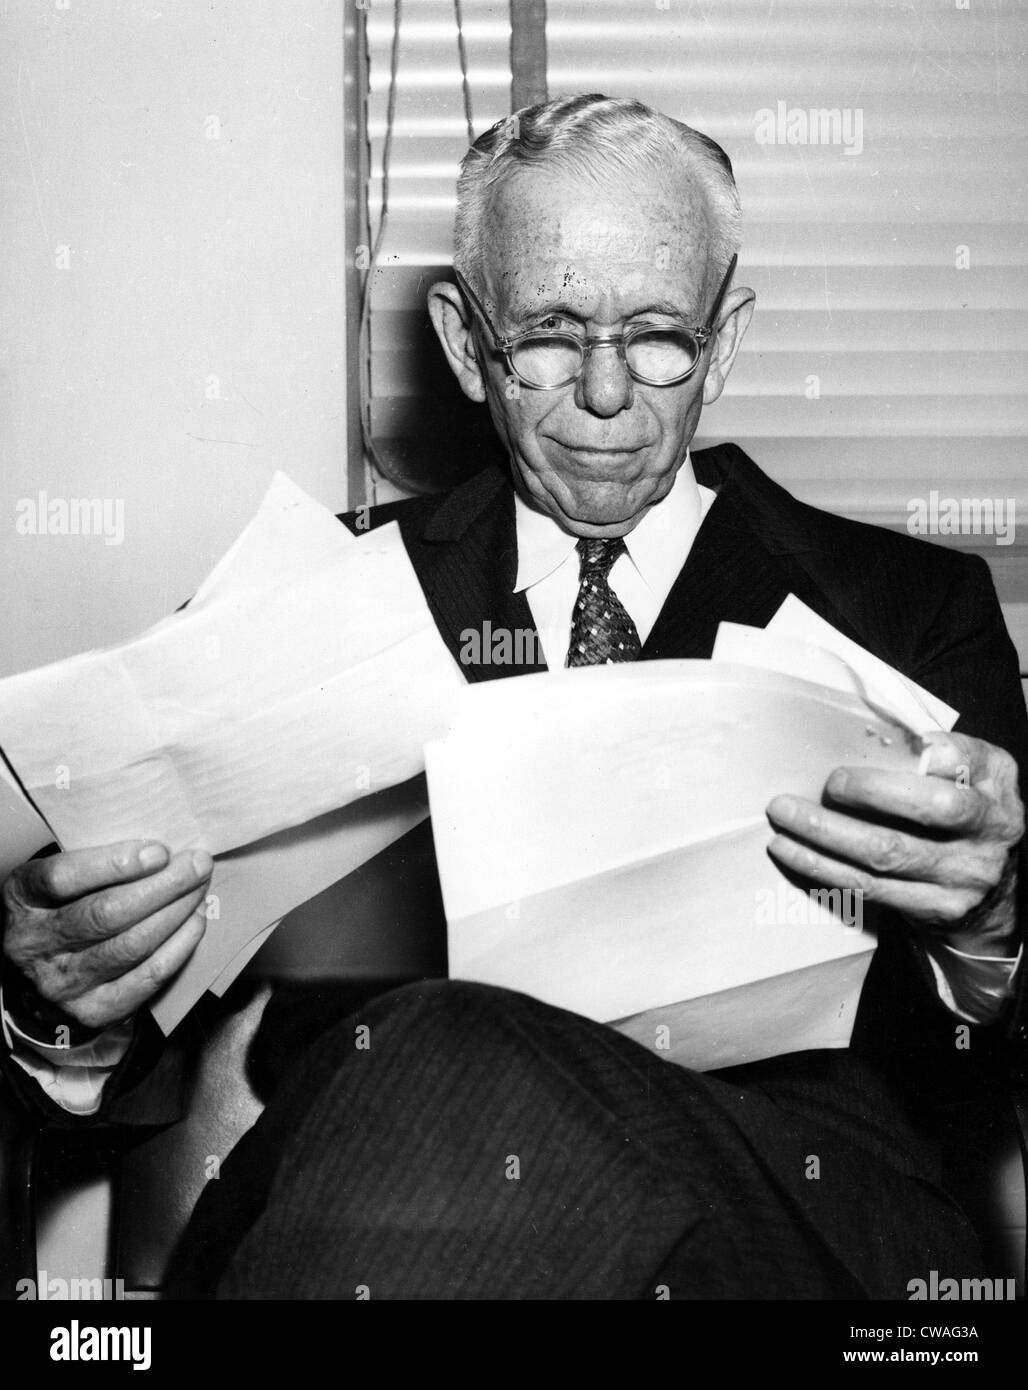 El general George C. Marshall (retirado) en el decenio de 1950. Cortesía: CSU Archives / Everett Collection Foto de stock